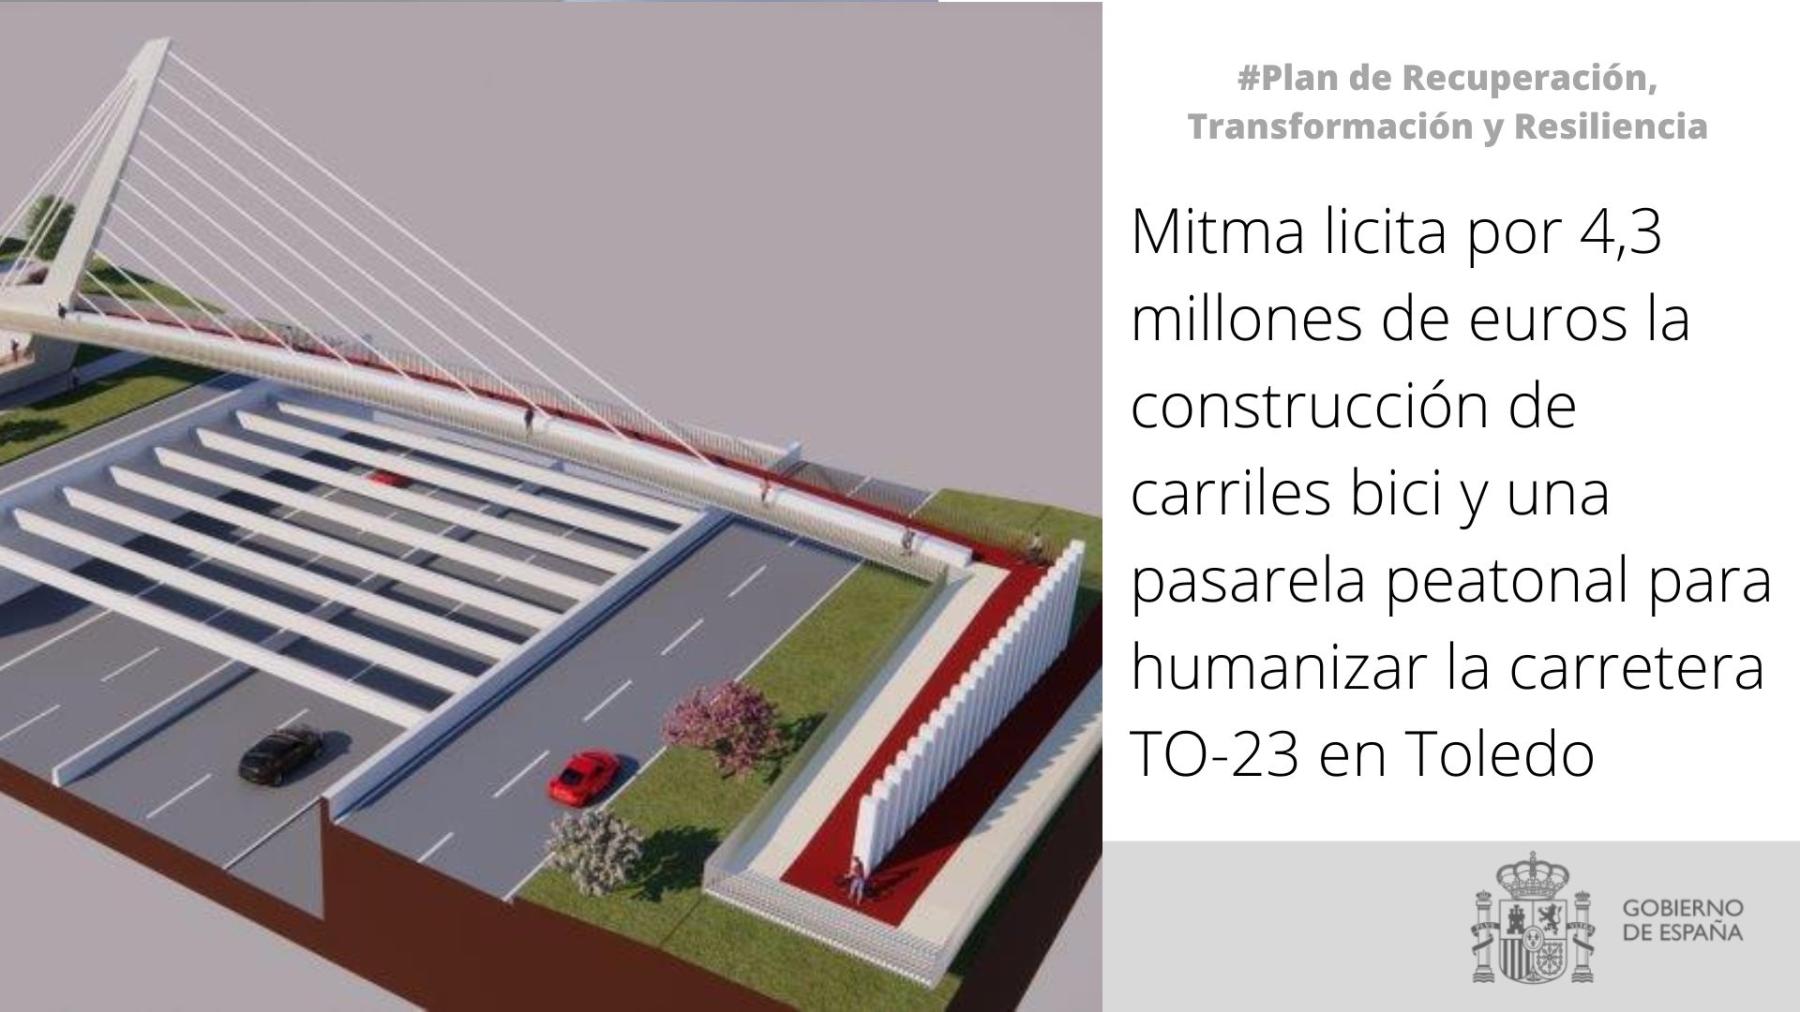 Mitma licita por 4,3 millones de euros la construcción de carriles bici y una pasarela peatonal para humanizar la carretera TO-23 en Toledo